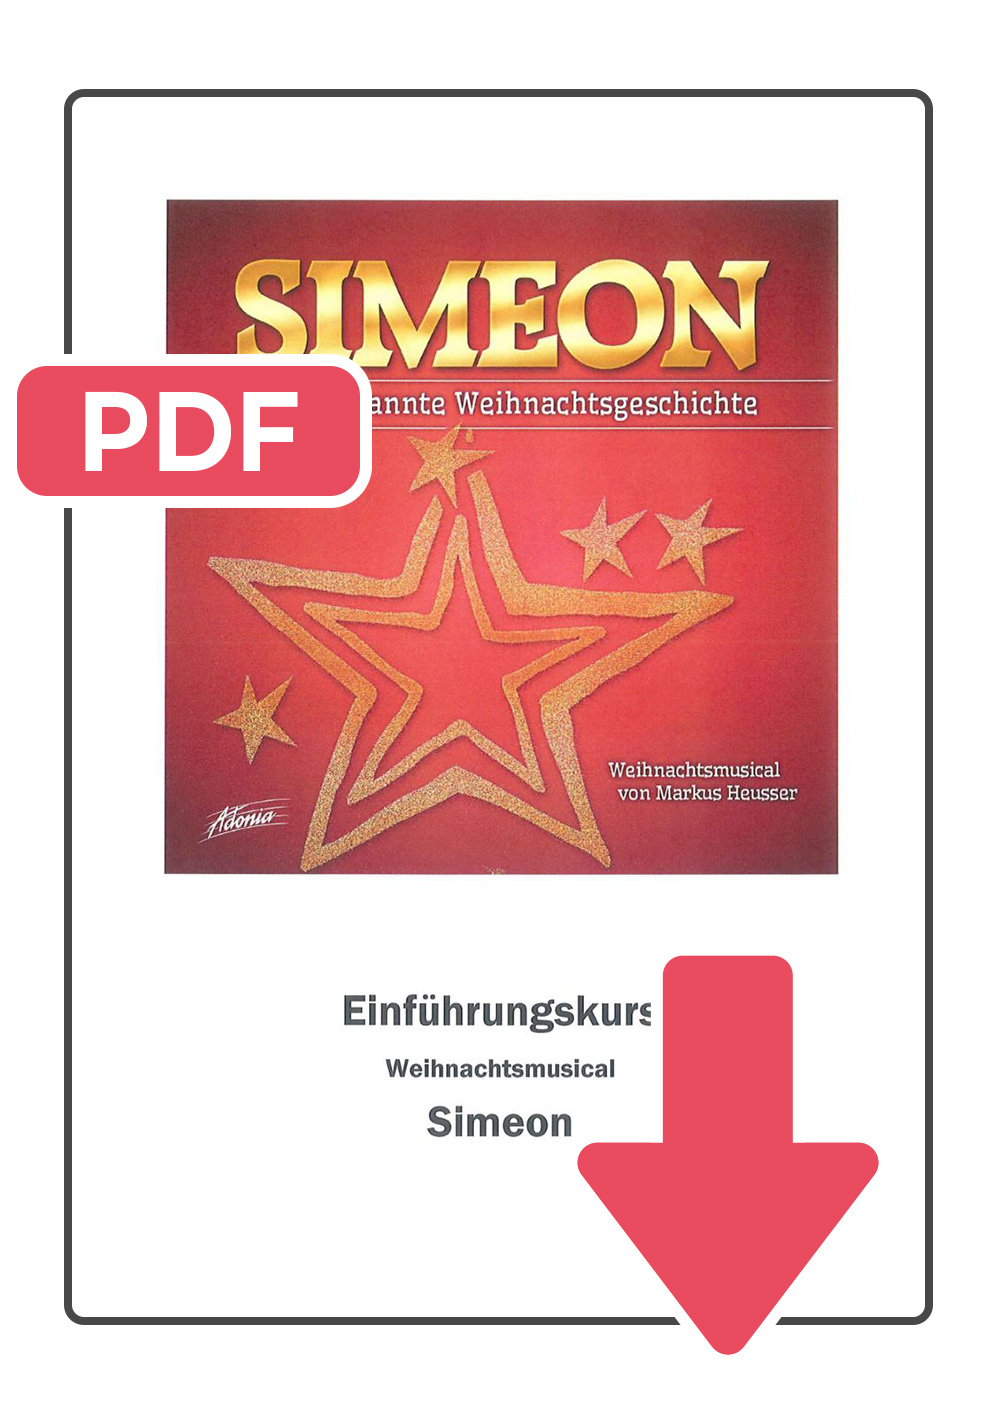 Simeon - Workshop Unterlagen Download